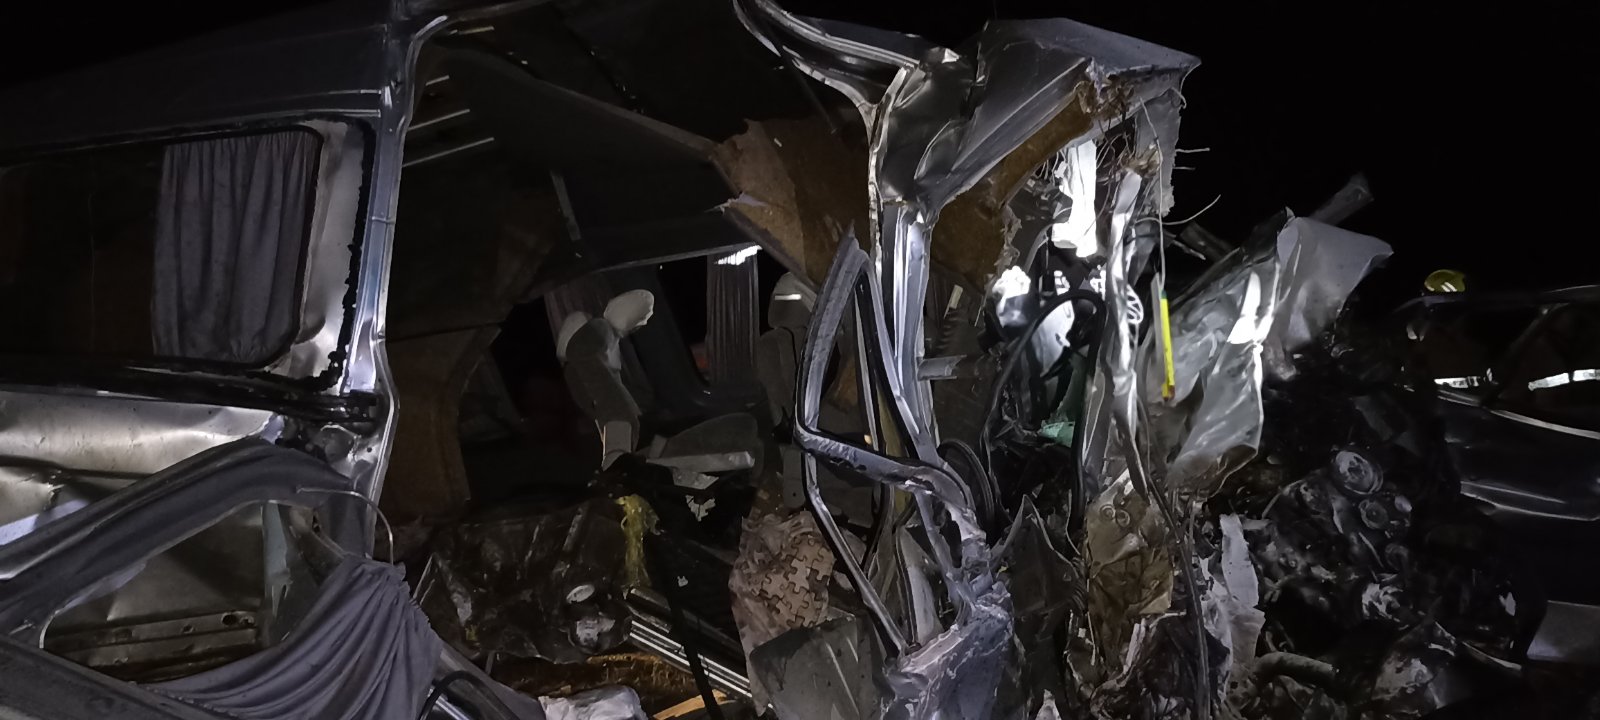 (ФОТО) На трассе Кишинев-Леушены произошло ДТП. Два человека погибли